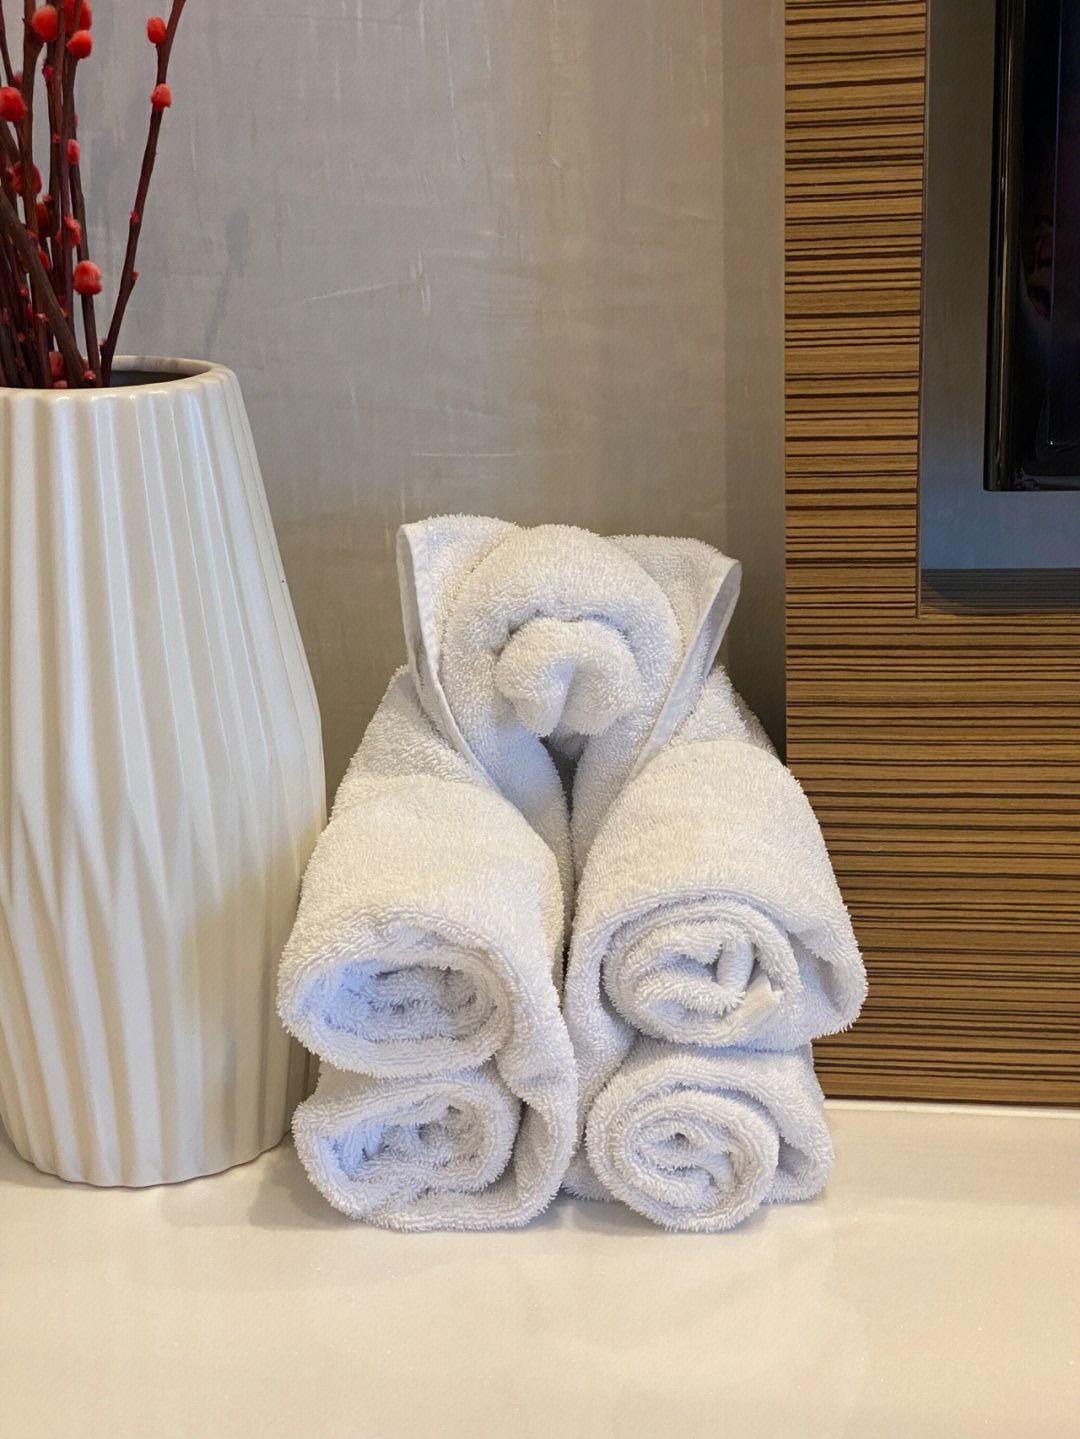 客房的毛巾折叠好可爱